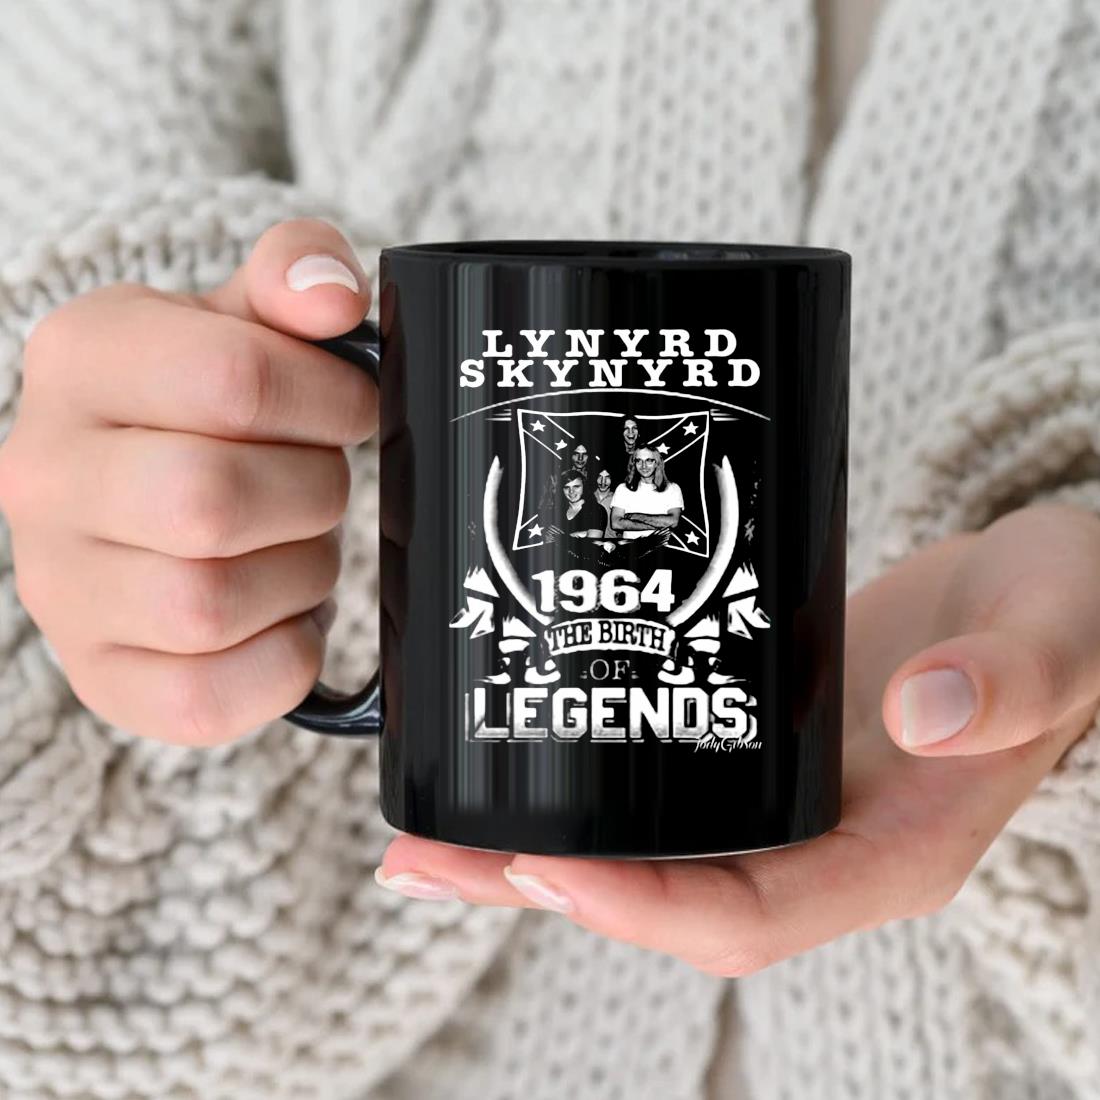 1964 The Birth Legend Lynyrd Skynyrd Vintage Mug